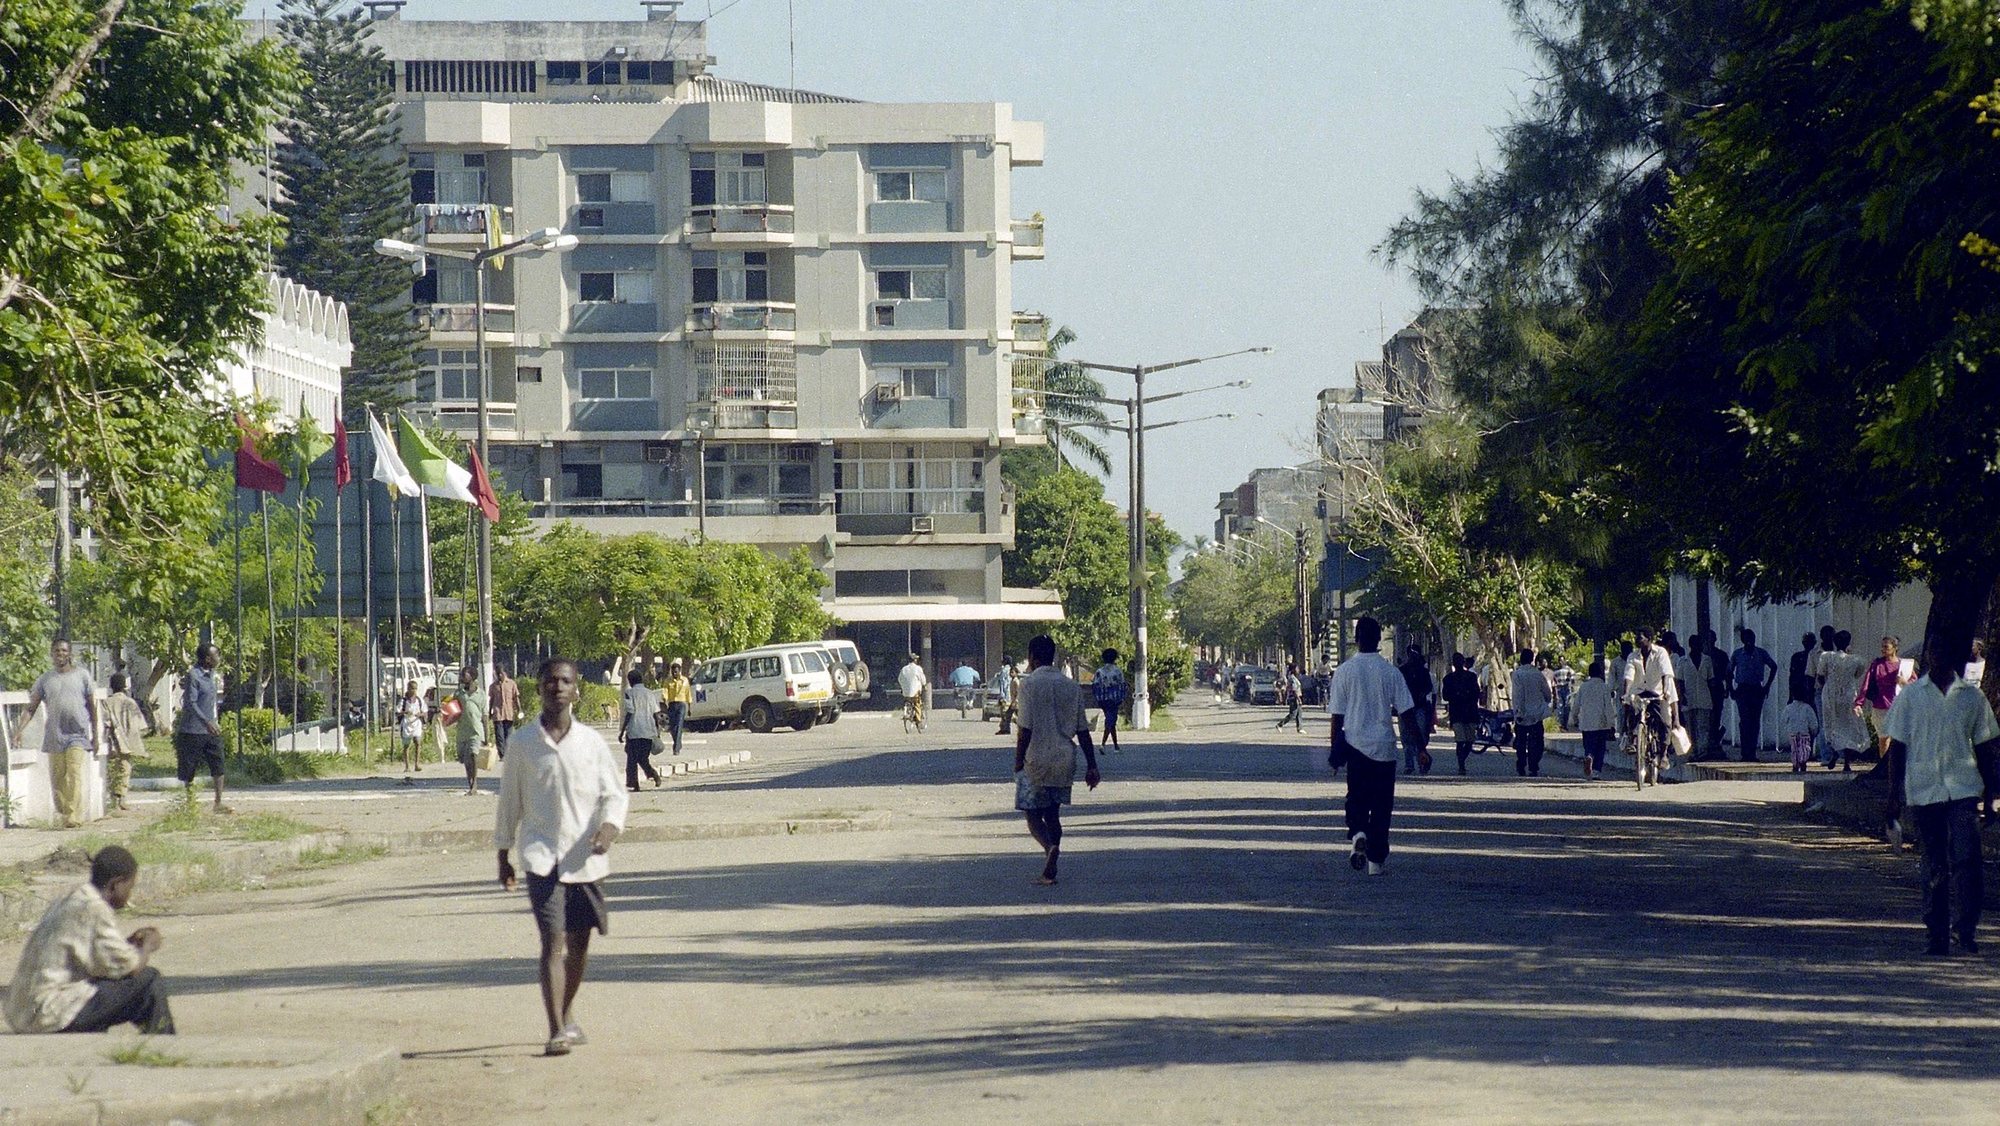 Paisagem urbana da cidade de Quelimane, Moçambique a 2 de maio de 1997.

António Cotrim / Lusa